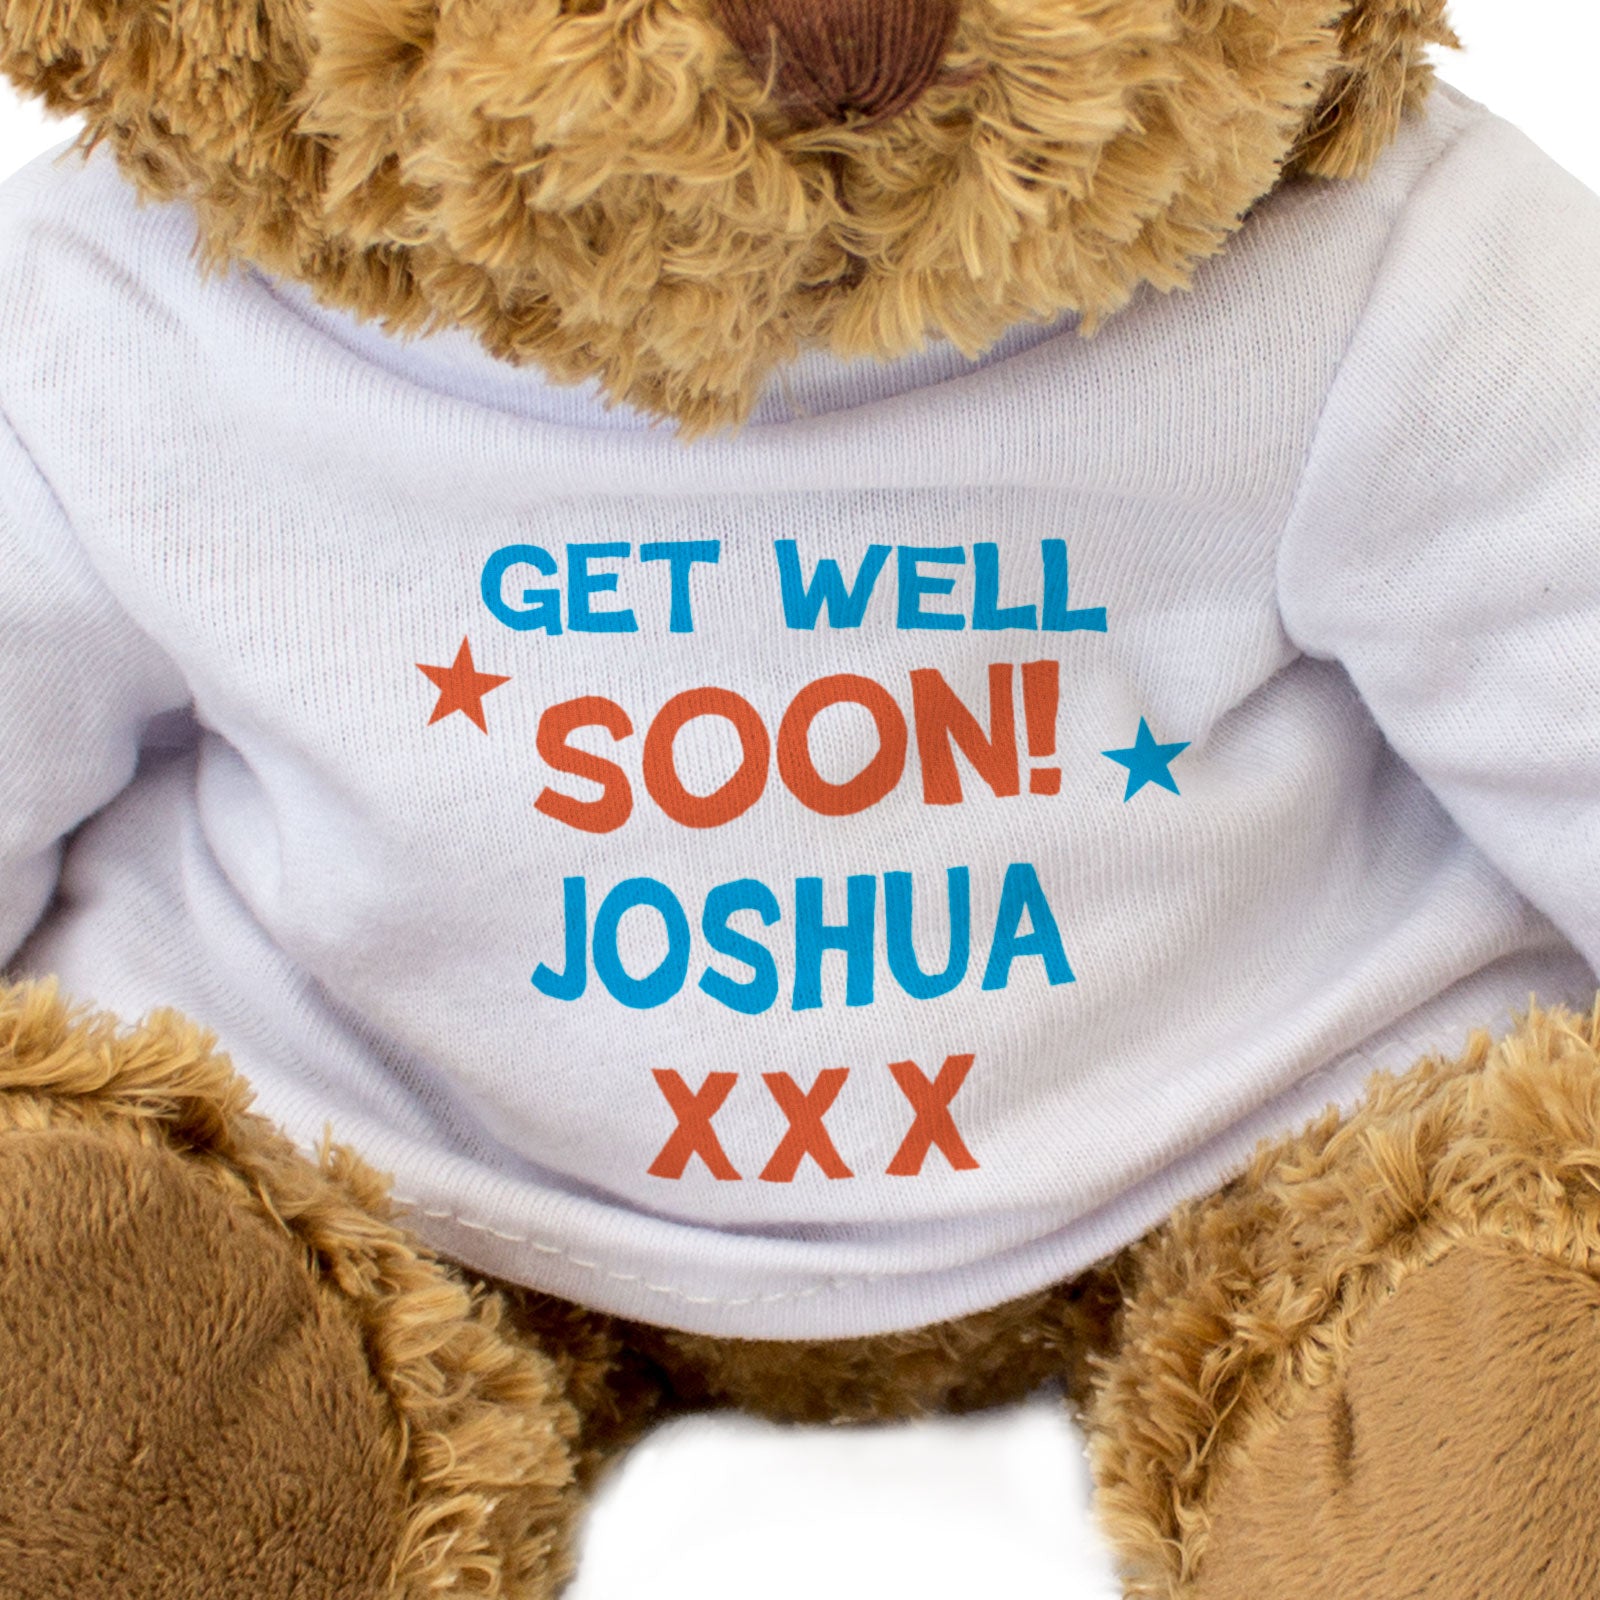 Get Well Soon Joshua - Teddy Bear